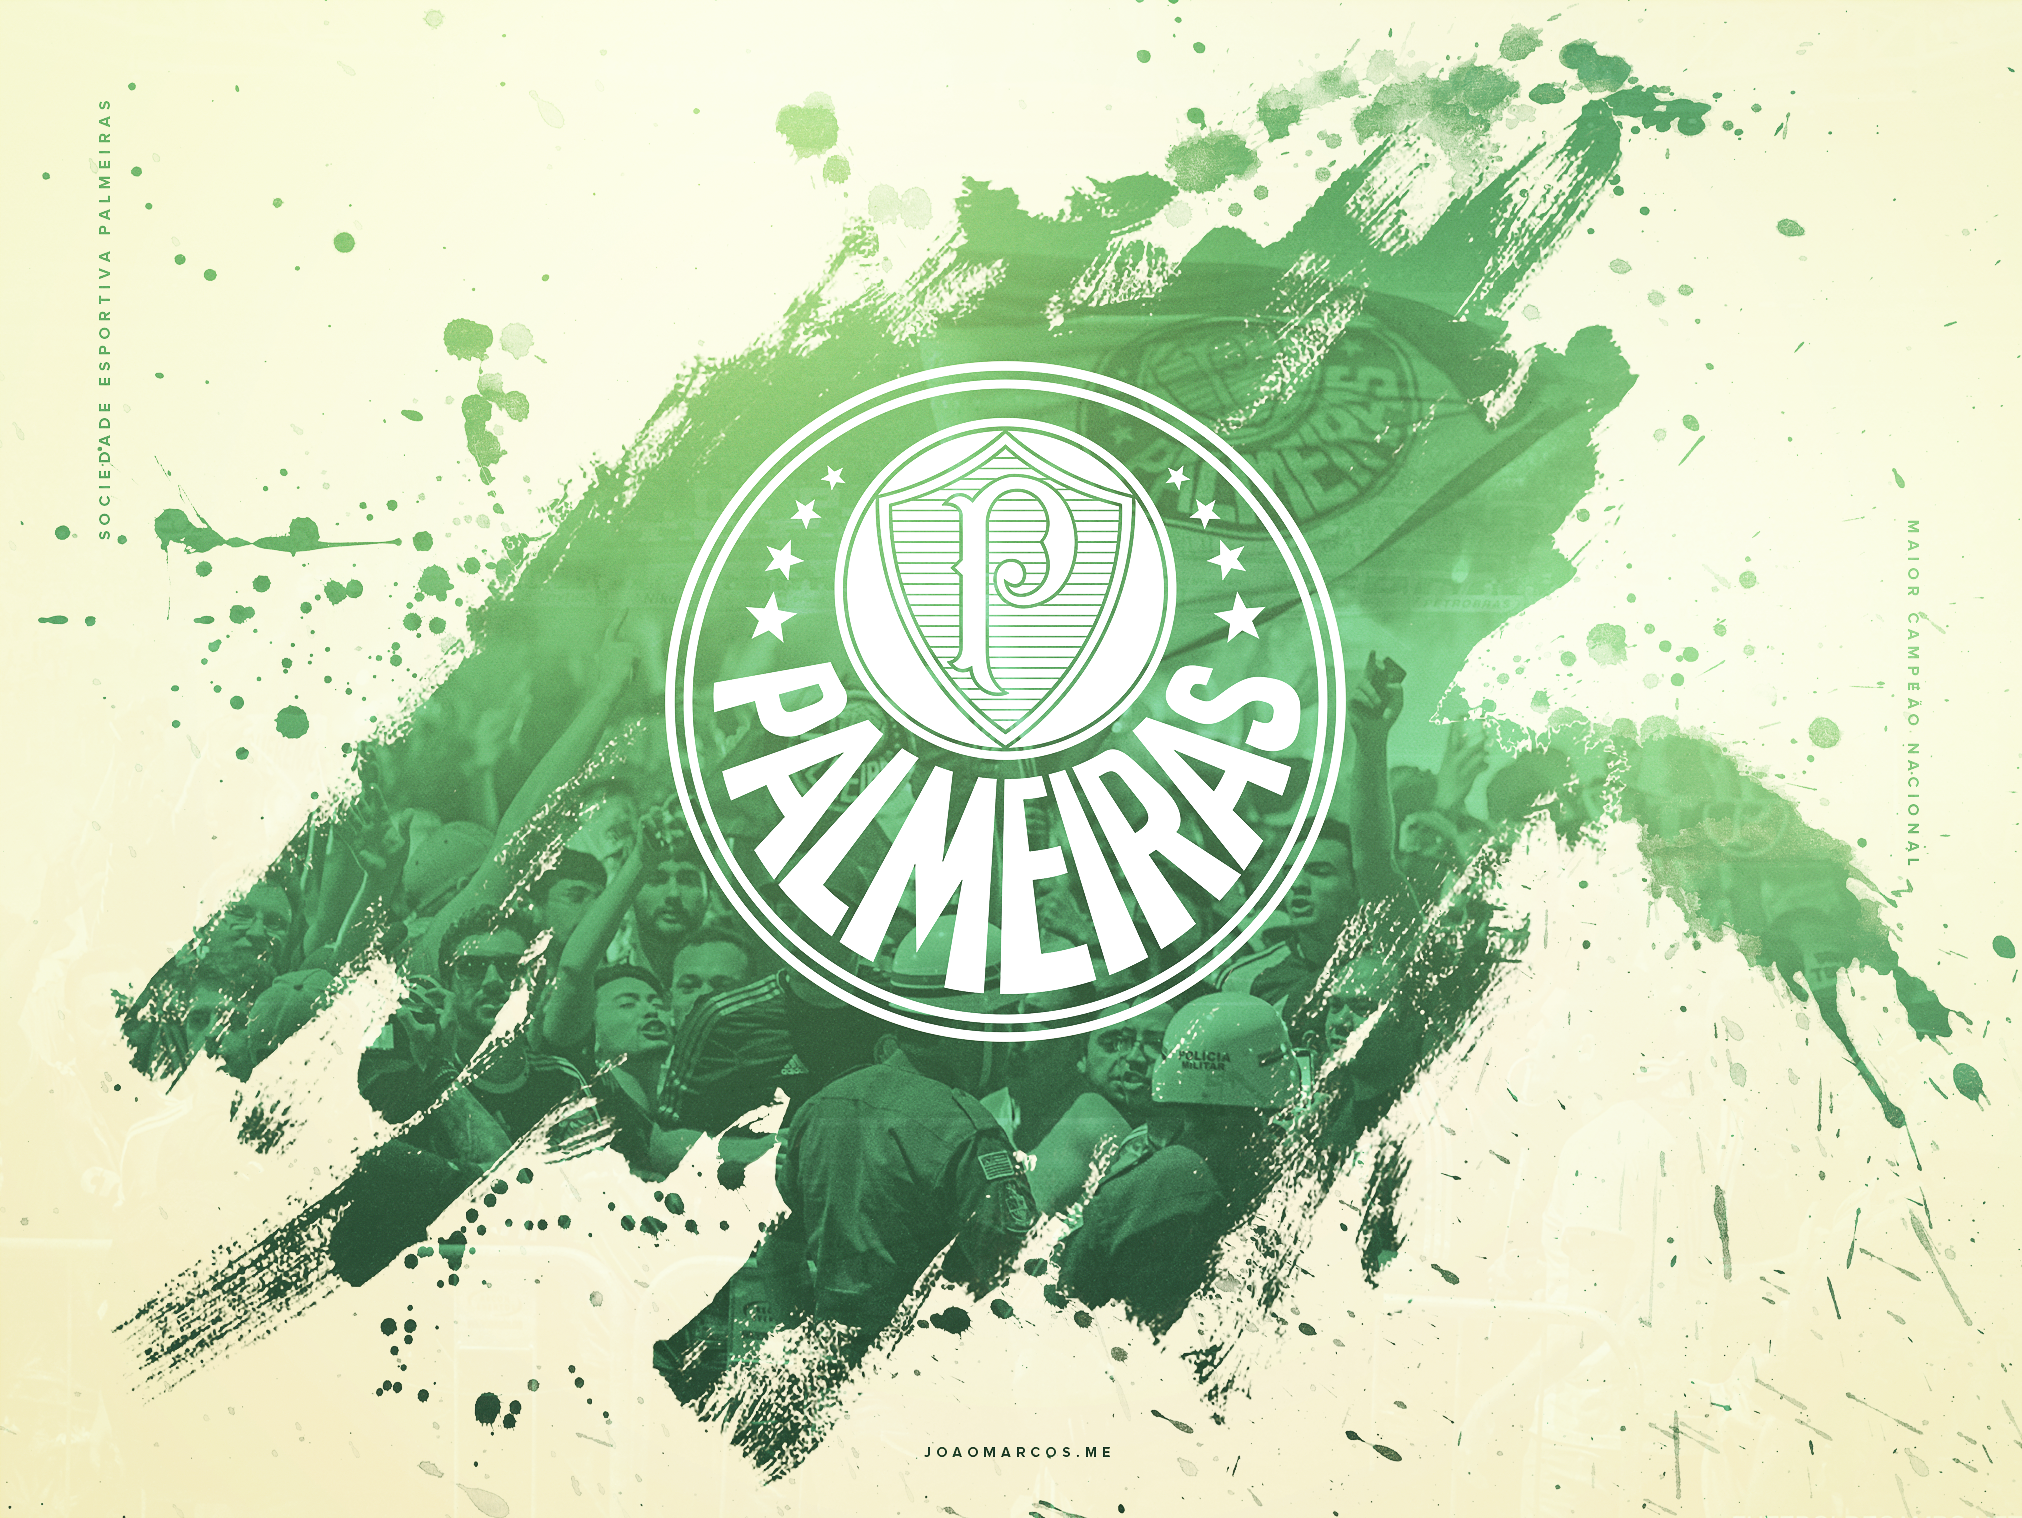 carta da parati palmeiras,verde,illustrazione,emblema,disegno grafico,grafica